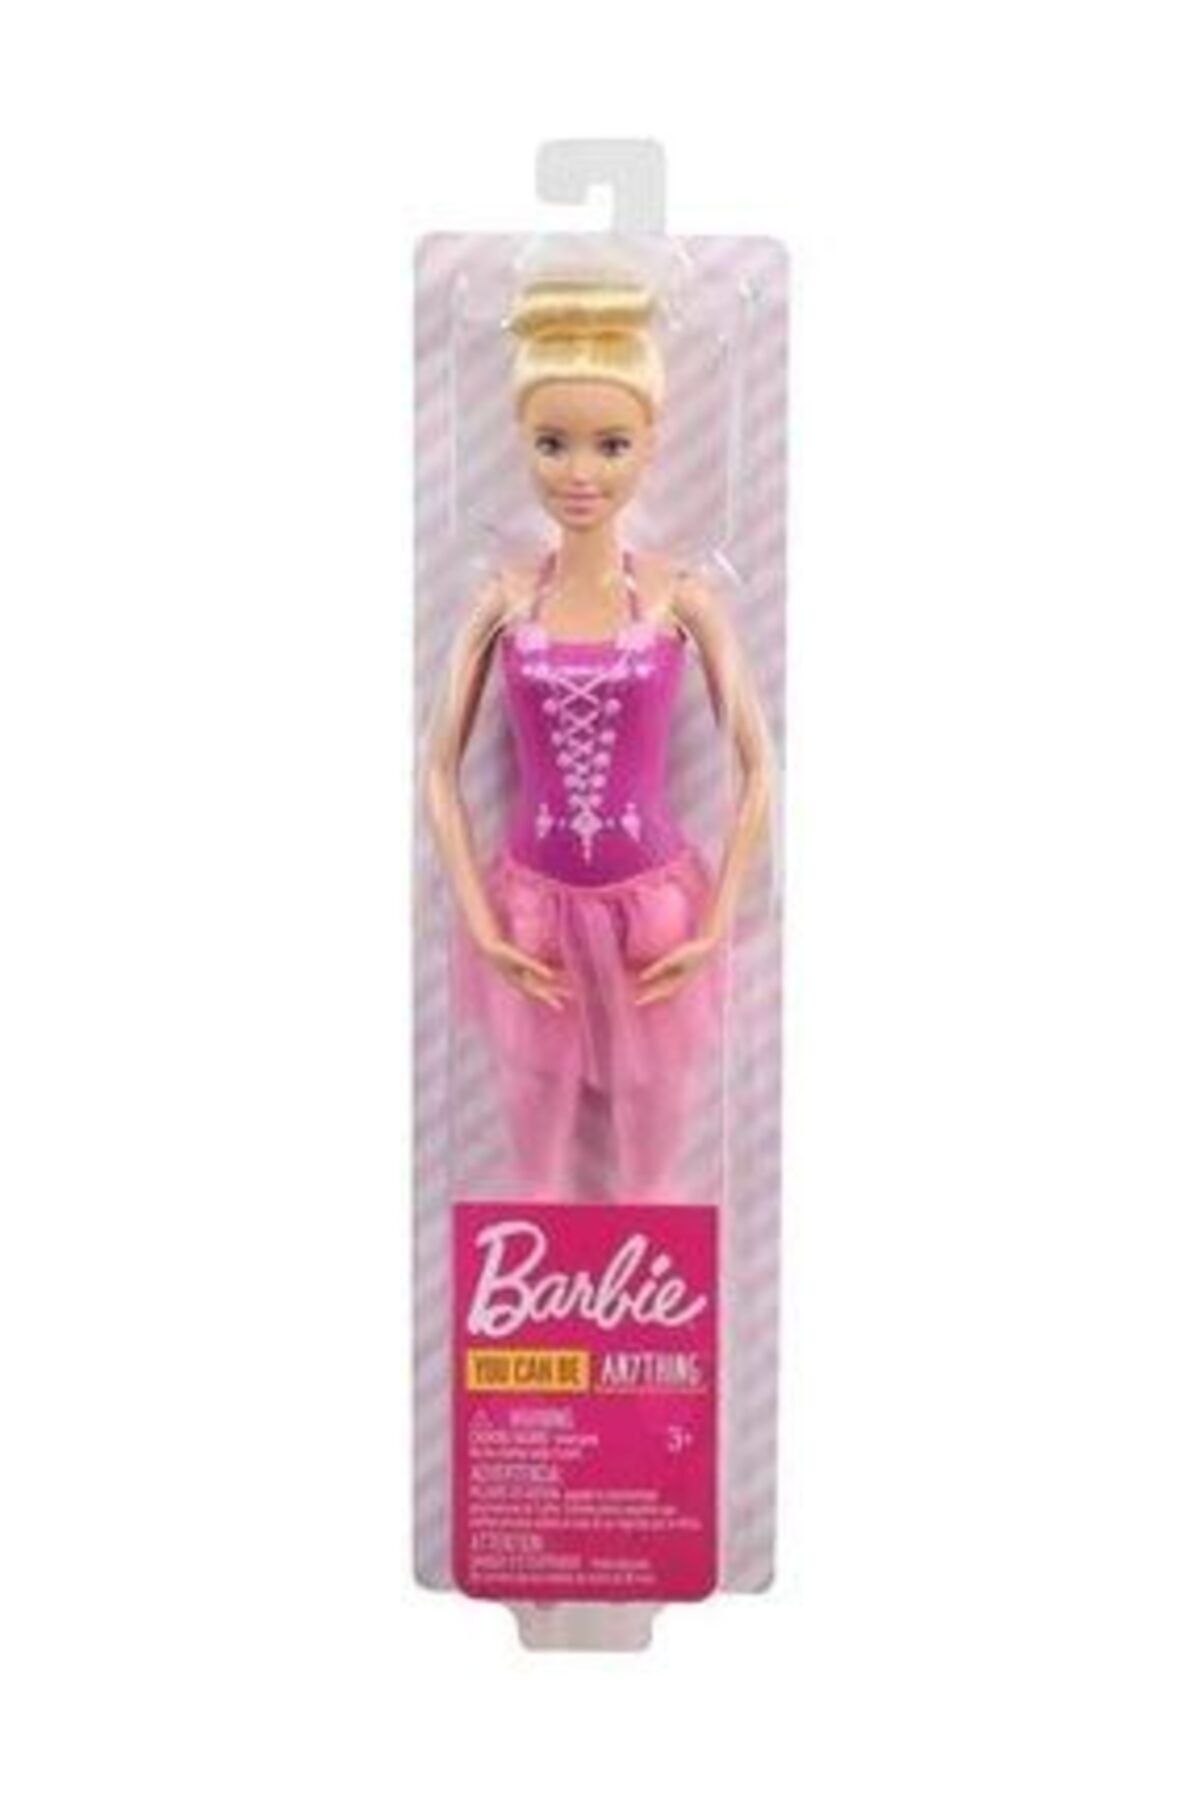 Barbie Marka Gjl58 ® Balerin Bebekler / Asorti Seçilemez. Oyuncak Kamyon Ve Iş Makineler